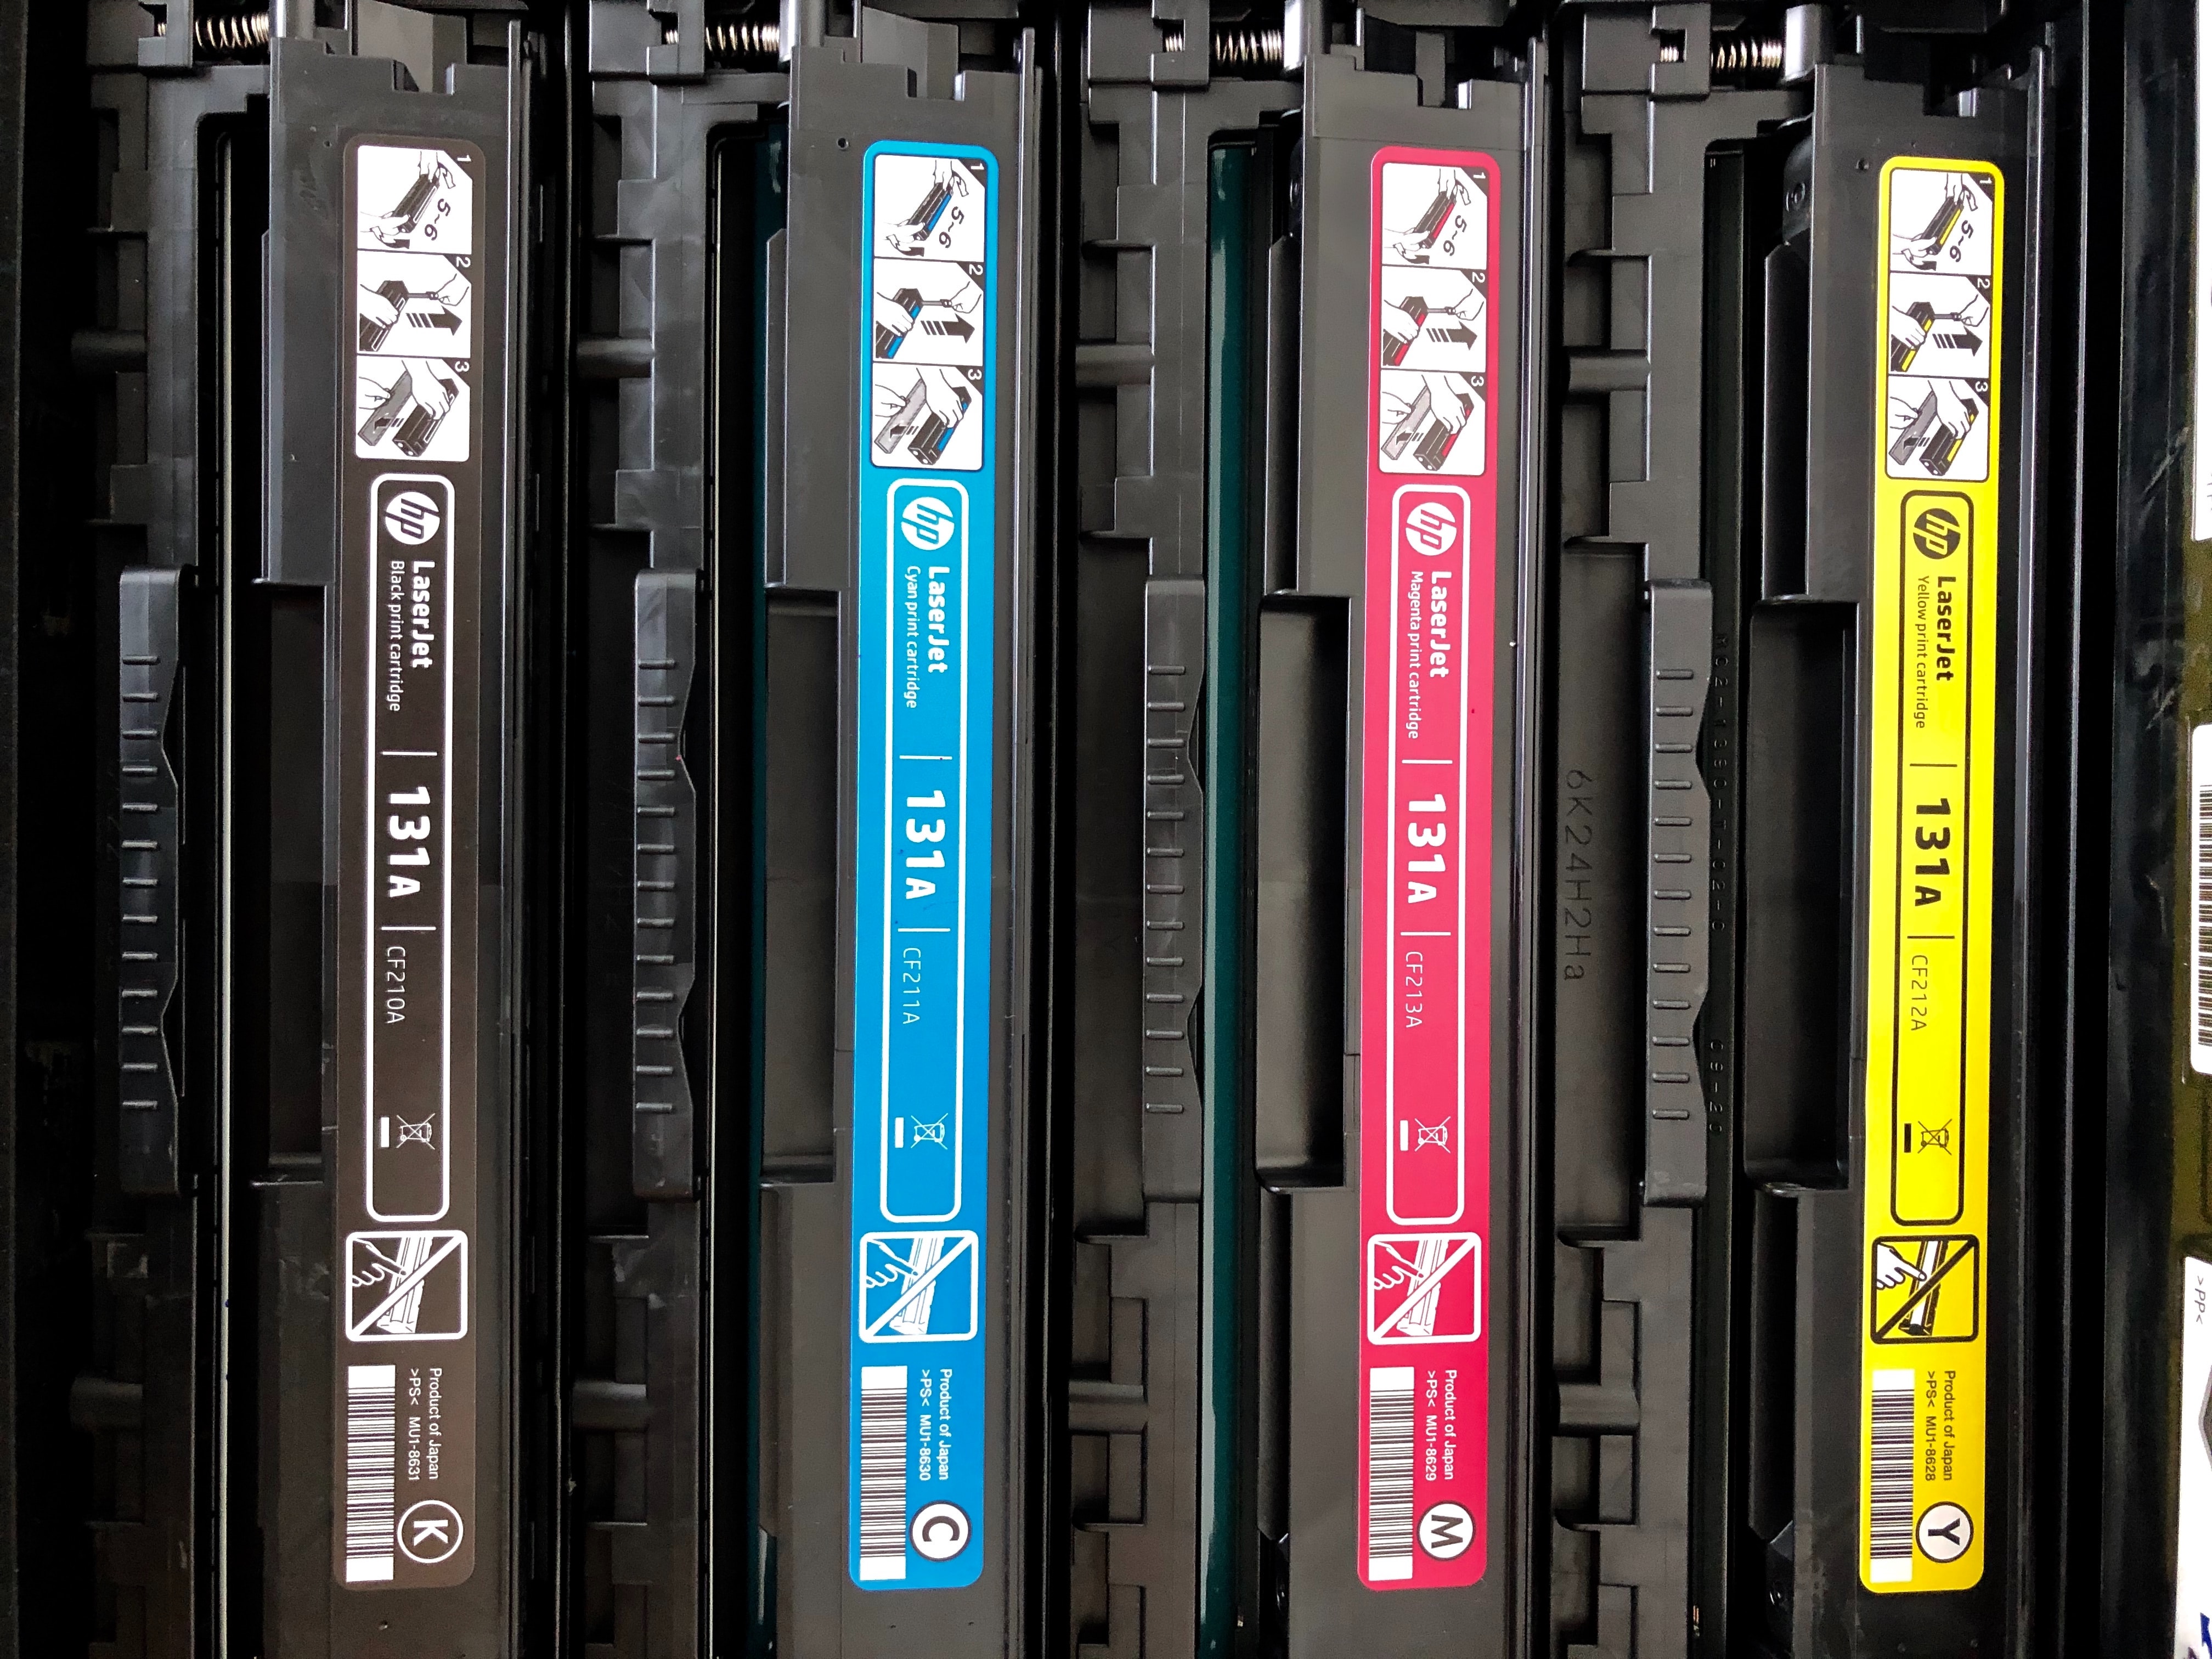 Original HP Cartridges